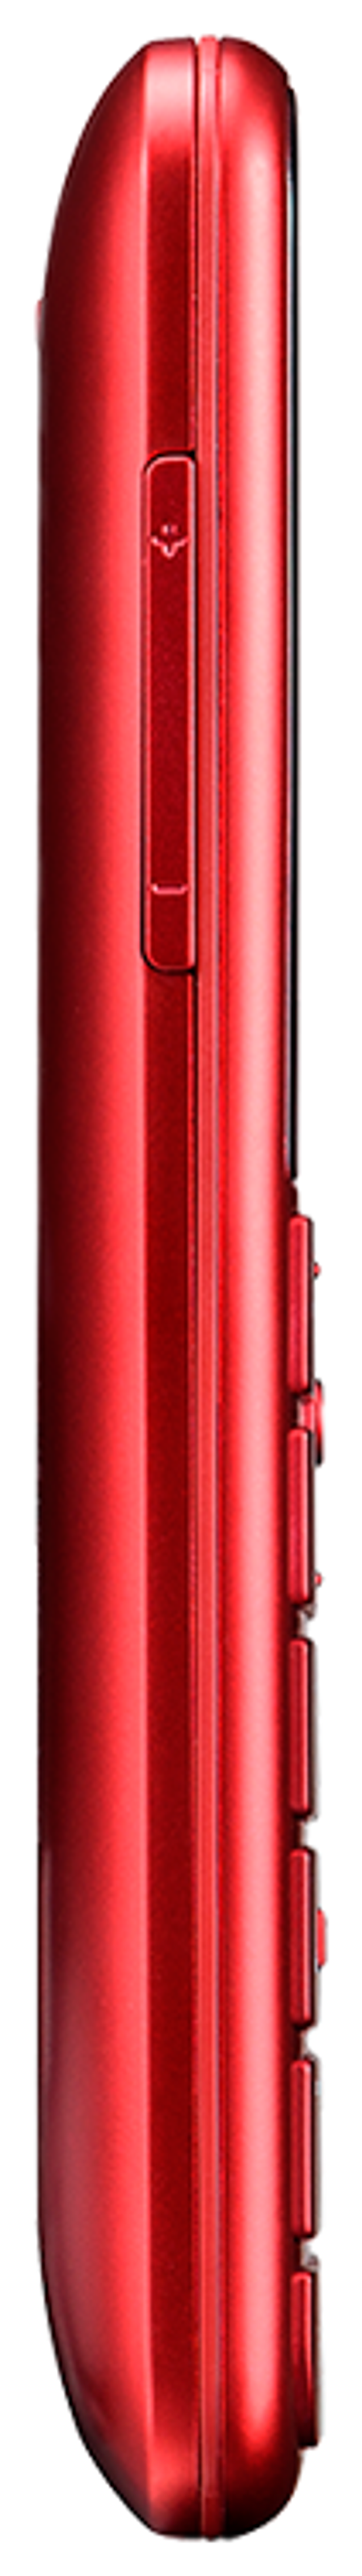 Сотовый телефон Panasonic KX-TU150RU красный